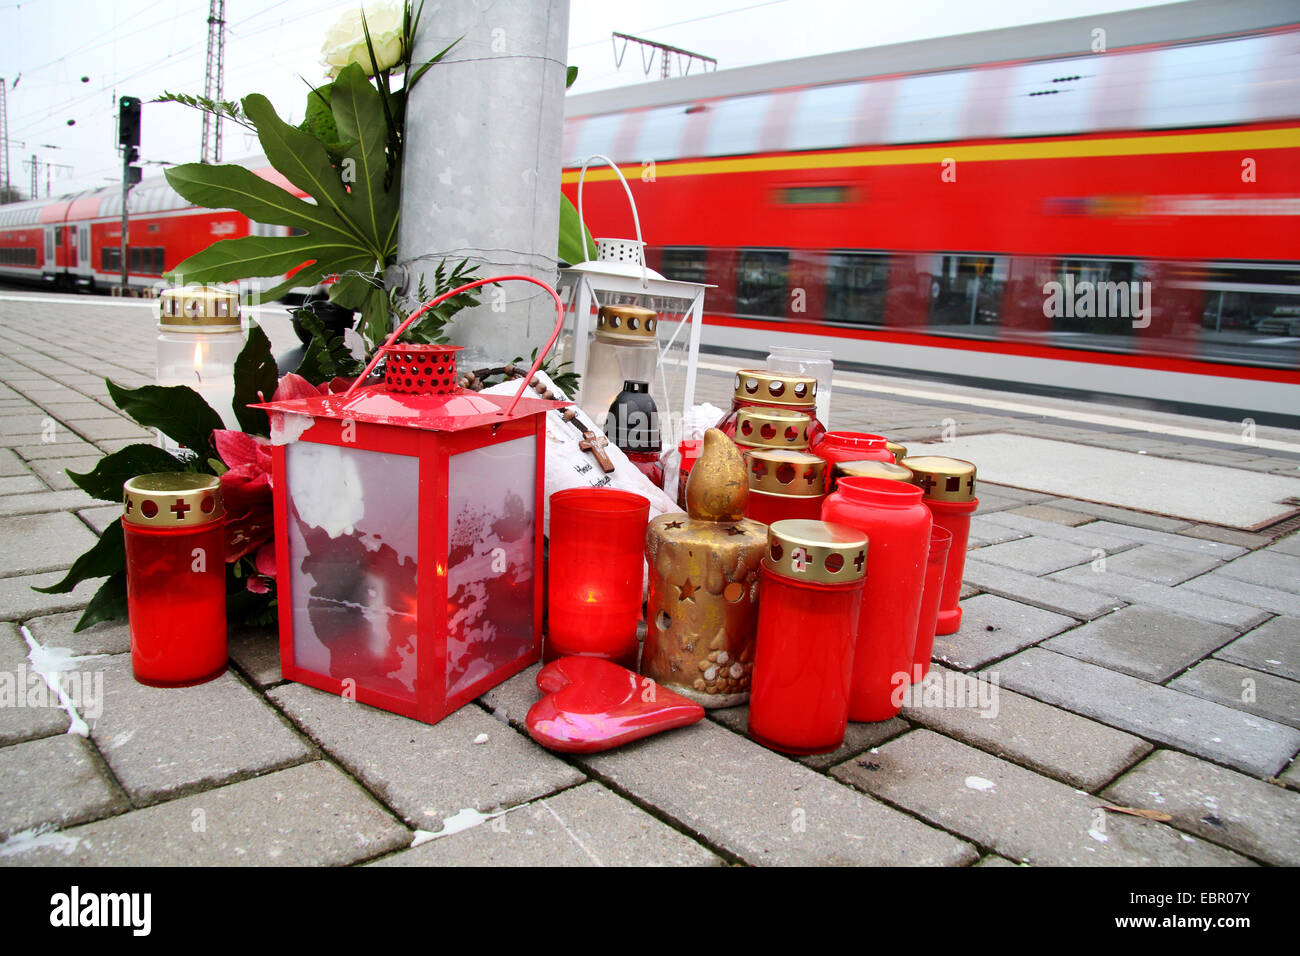 Luogo commemorativo con candele funebri dopo il suicidio su una piattaforma del treno, Germania Foto Stock